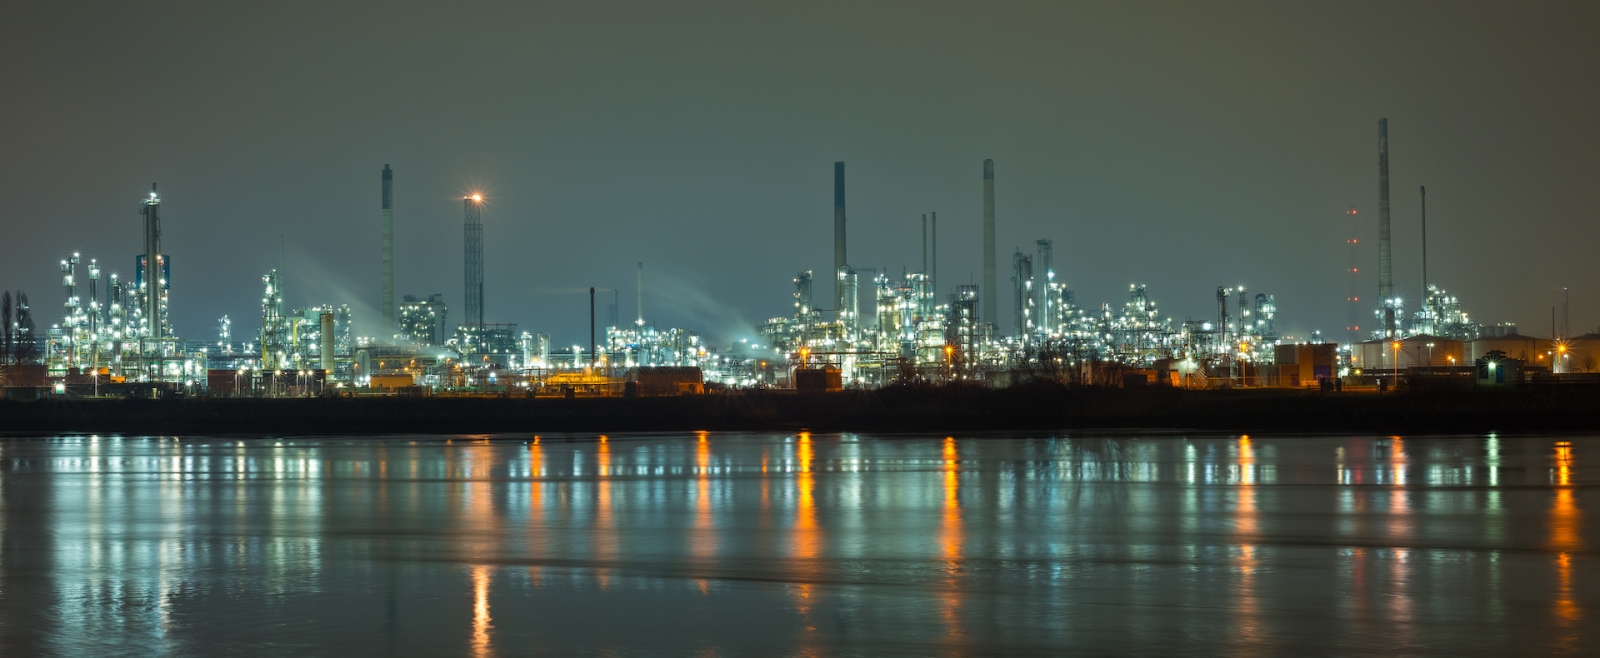 Panorama der petrochemischen Industrie in Rotterdam, Niederlande bei Nacht